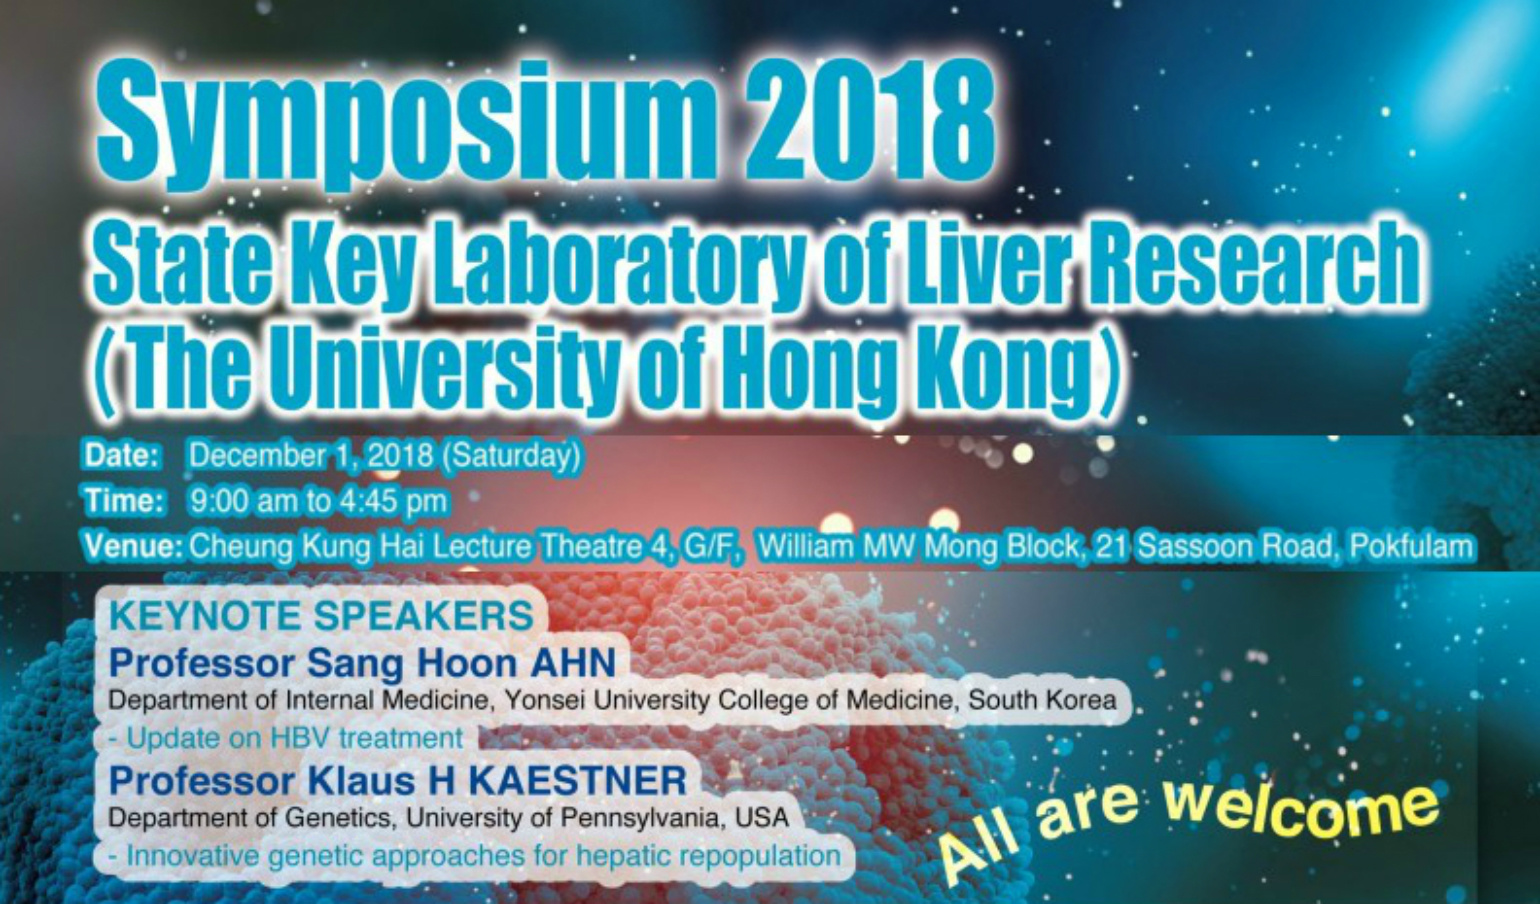 SKLLR Symposium 2018 